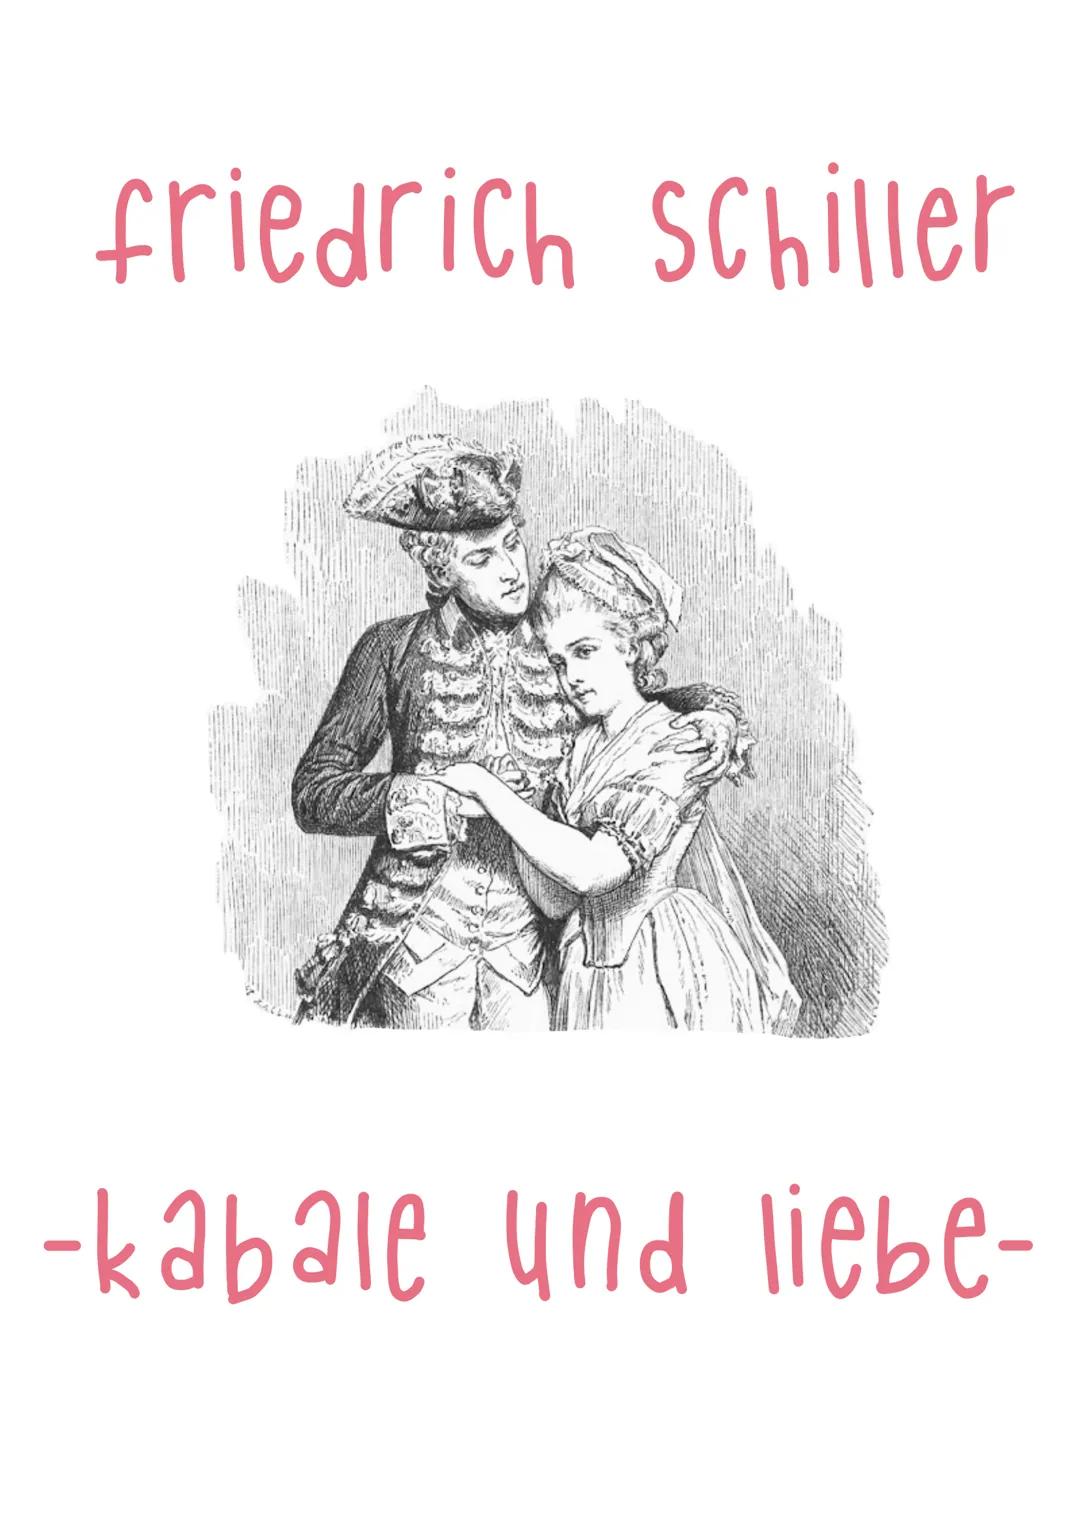 friedrich Schiller
-kabale und liebe- DOTEN ZUM WERK.
->
Titel: Kabale und Liebe
Gattung: bürgerliches Trauerspiel
Originalsprache: Deutsch
